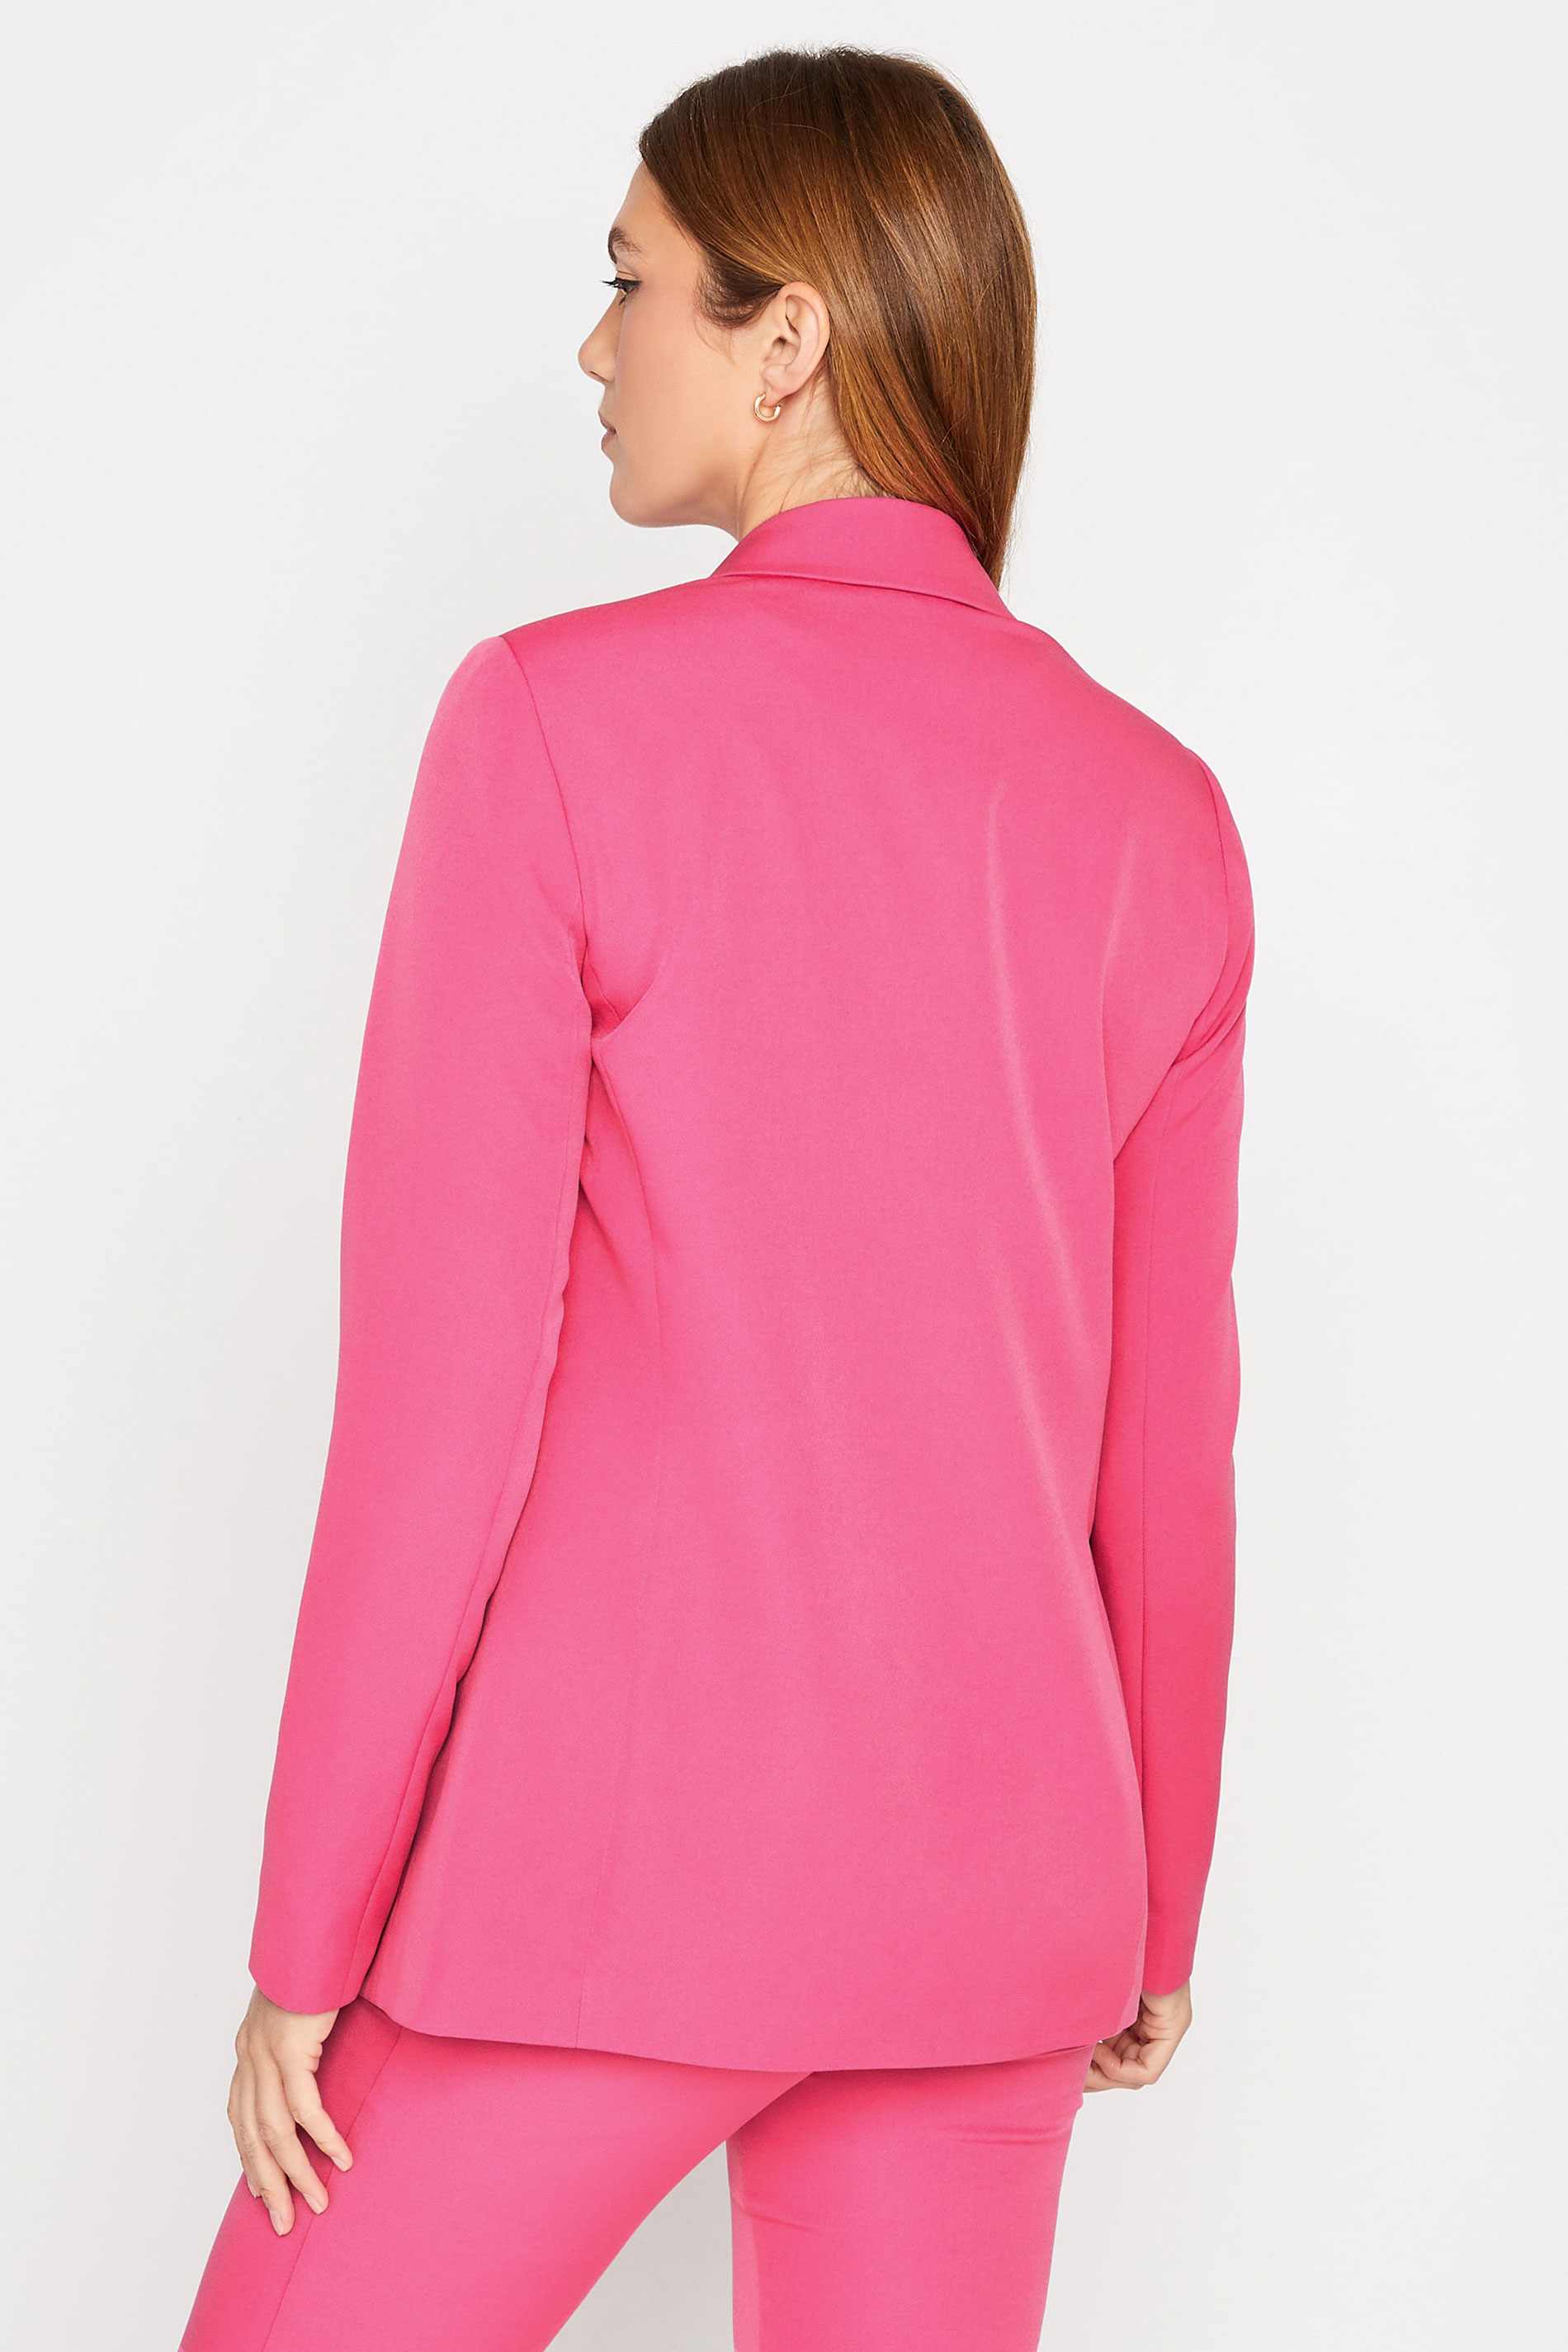 LTS Tall Women's Pink Tailored Blazer | Long Tall Sally  3